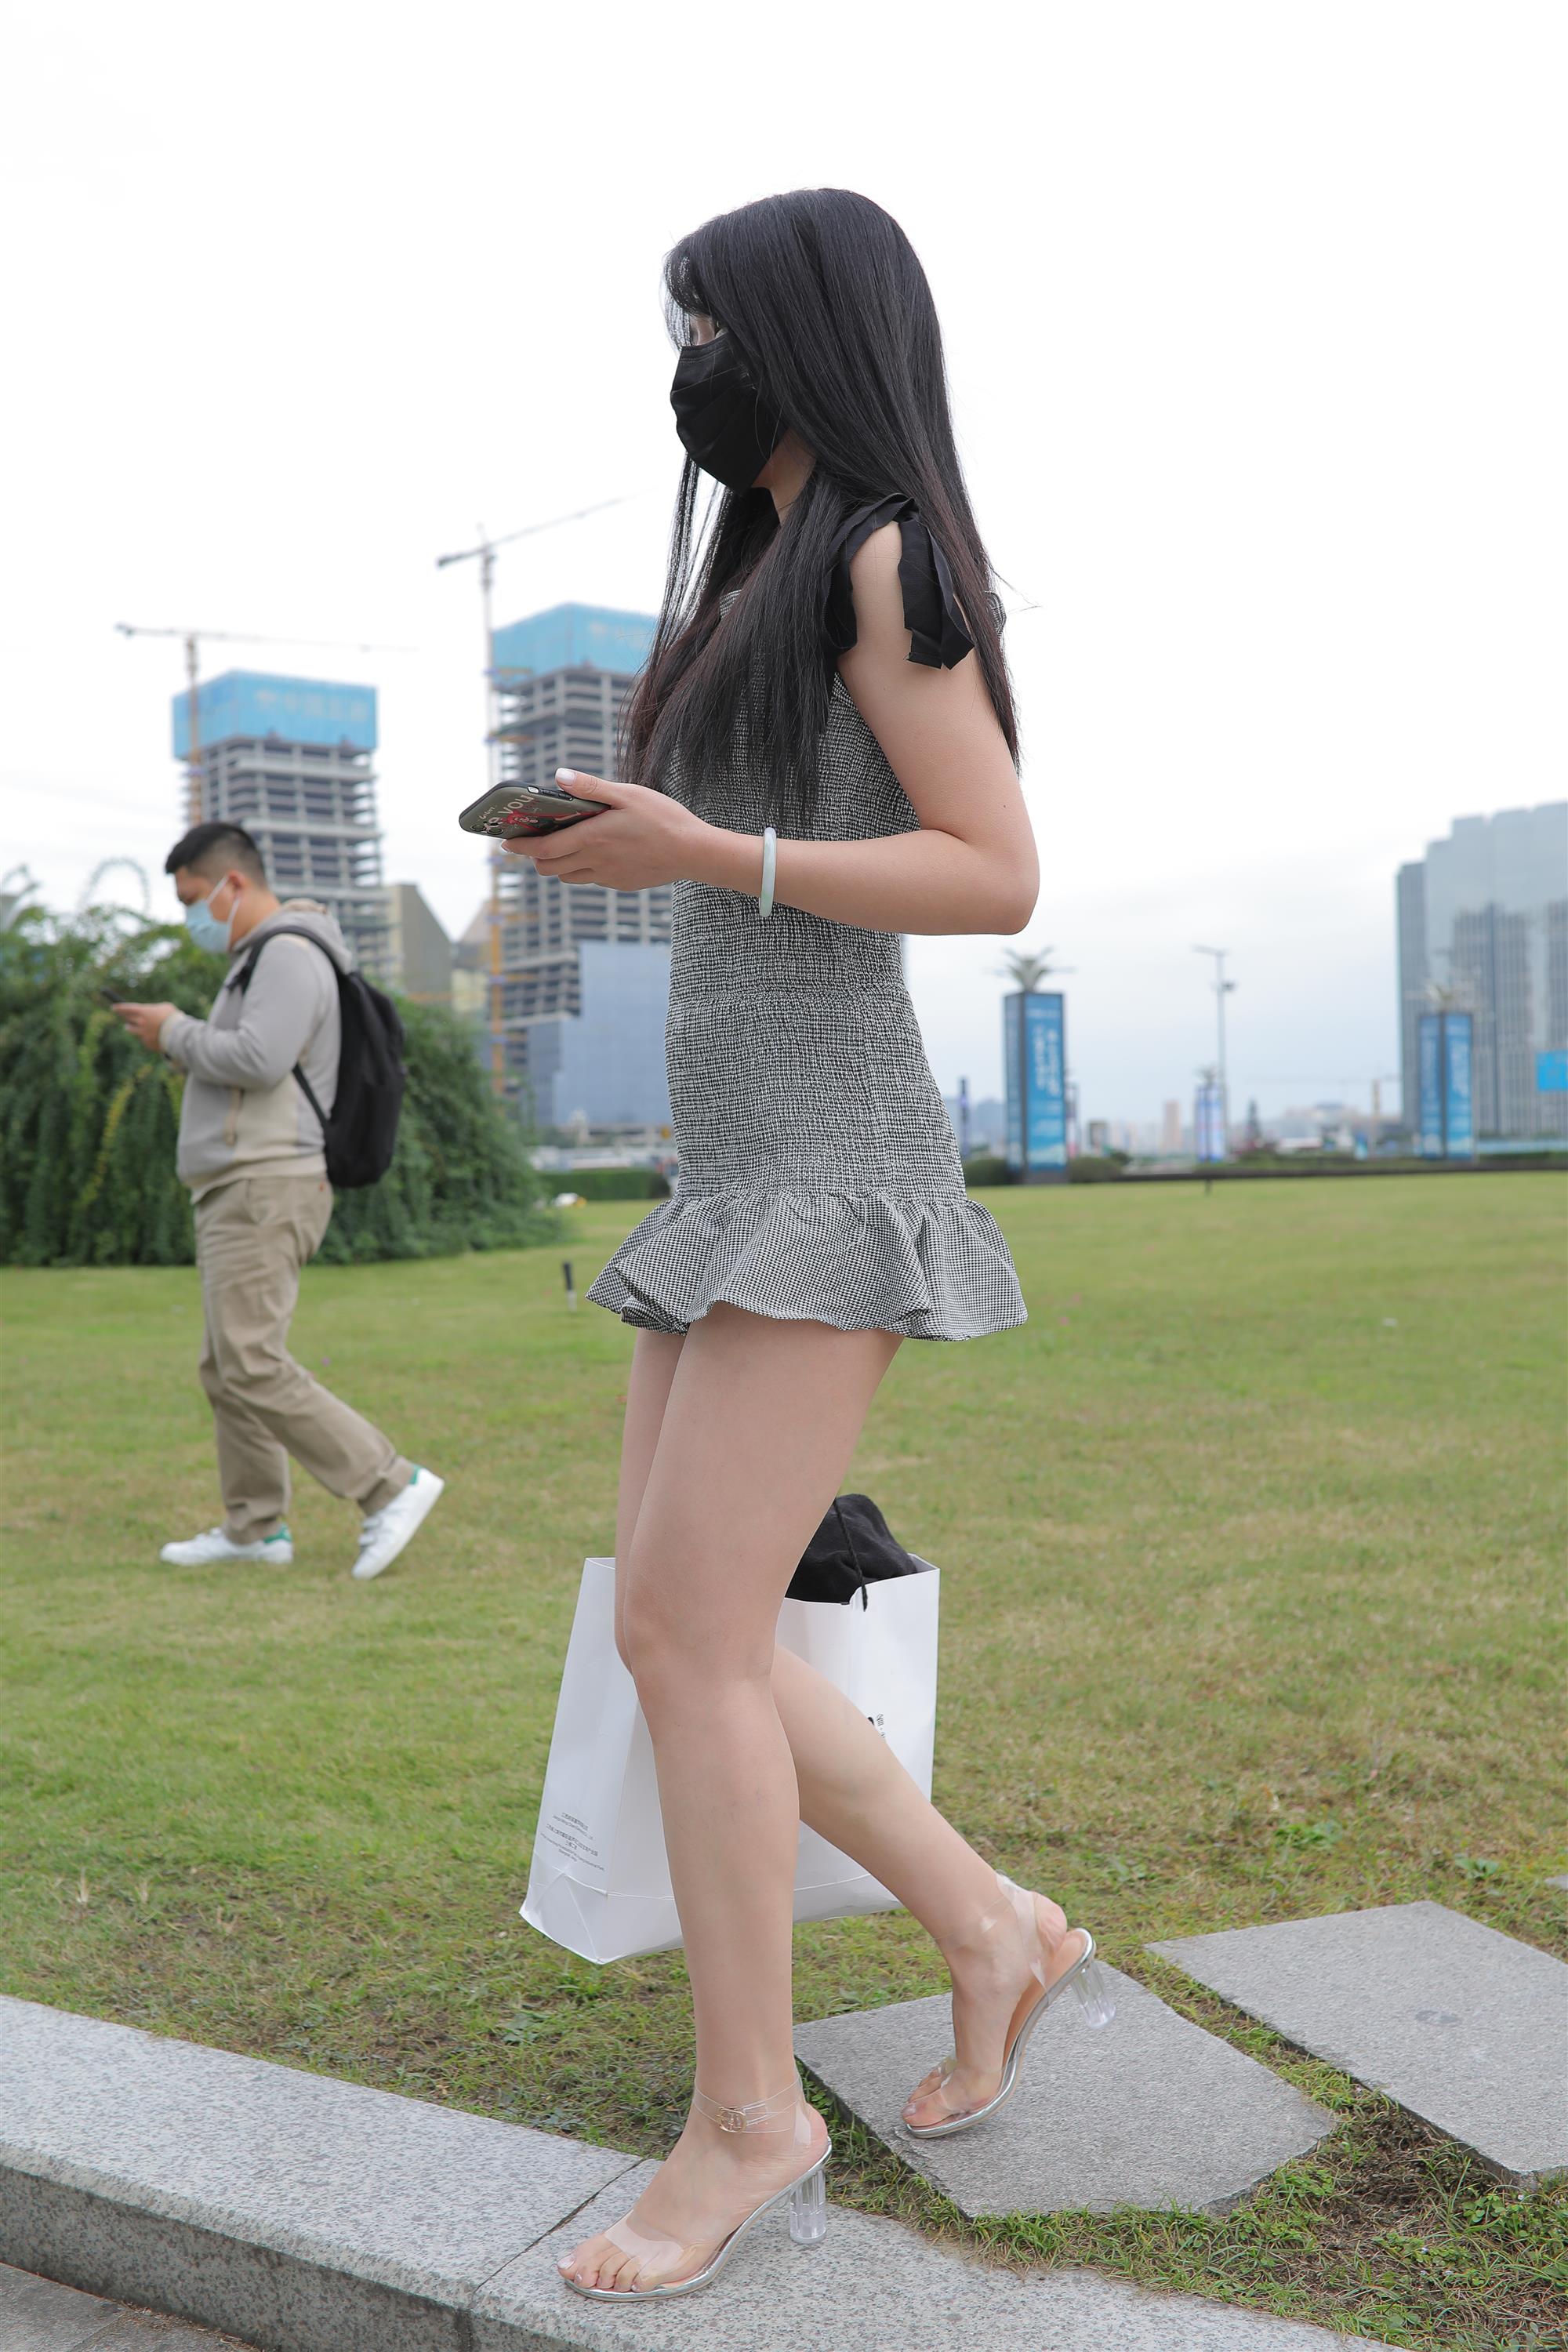 Street Girl In Short Skirt - 139.jpg